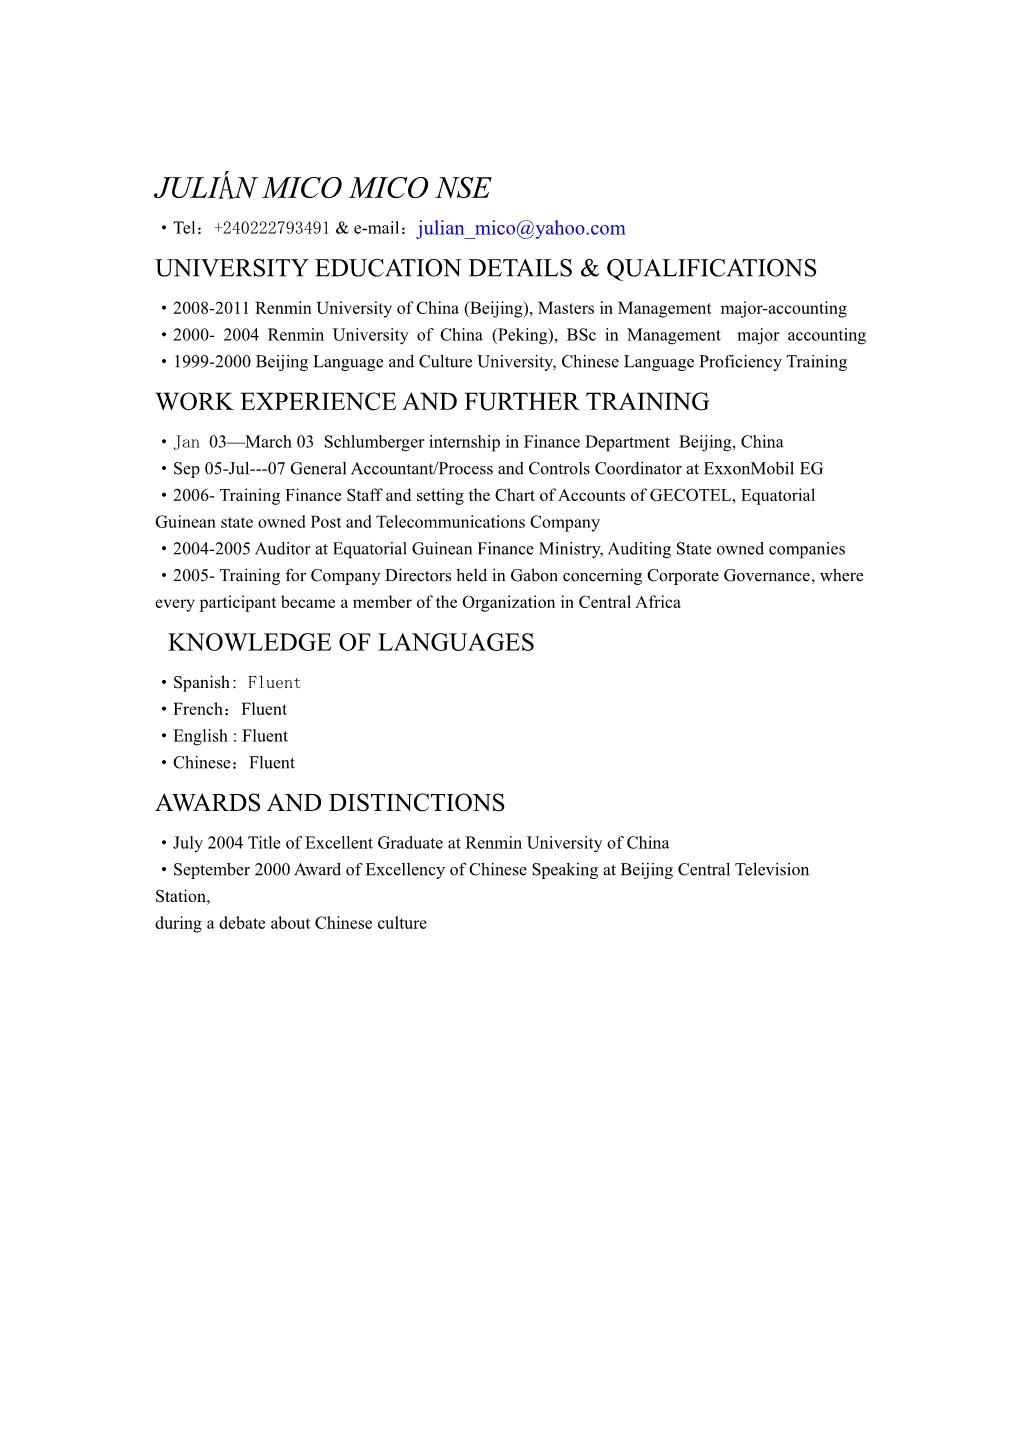 University Education Details & Qualifications